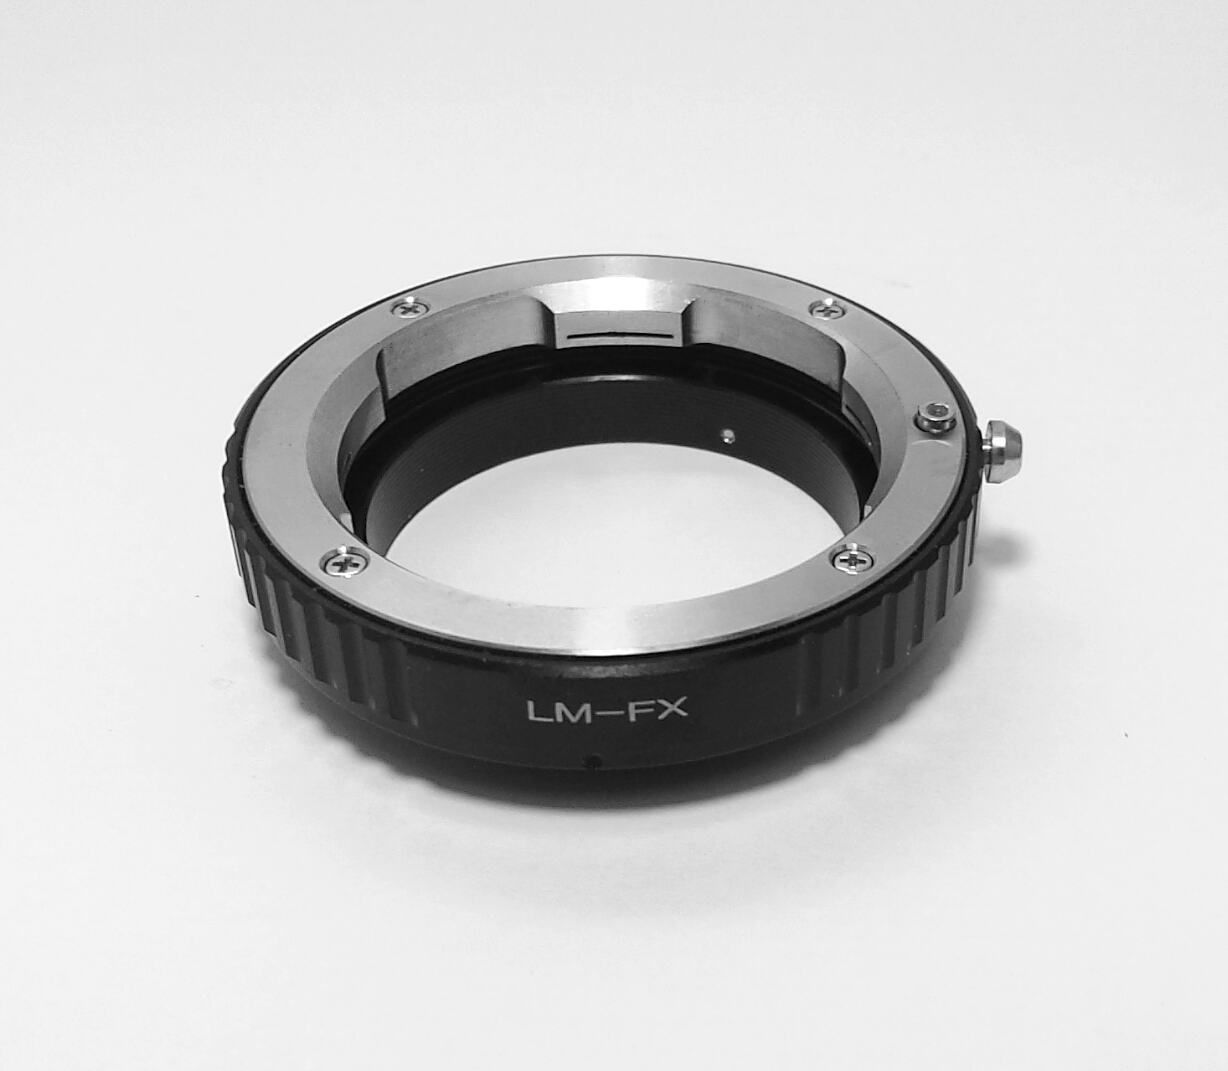 Leica M lens To Fujifilm FX Body